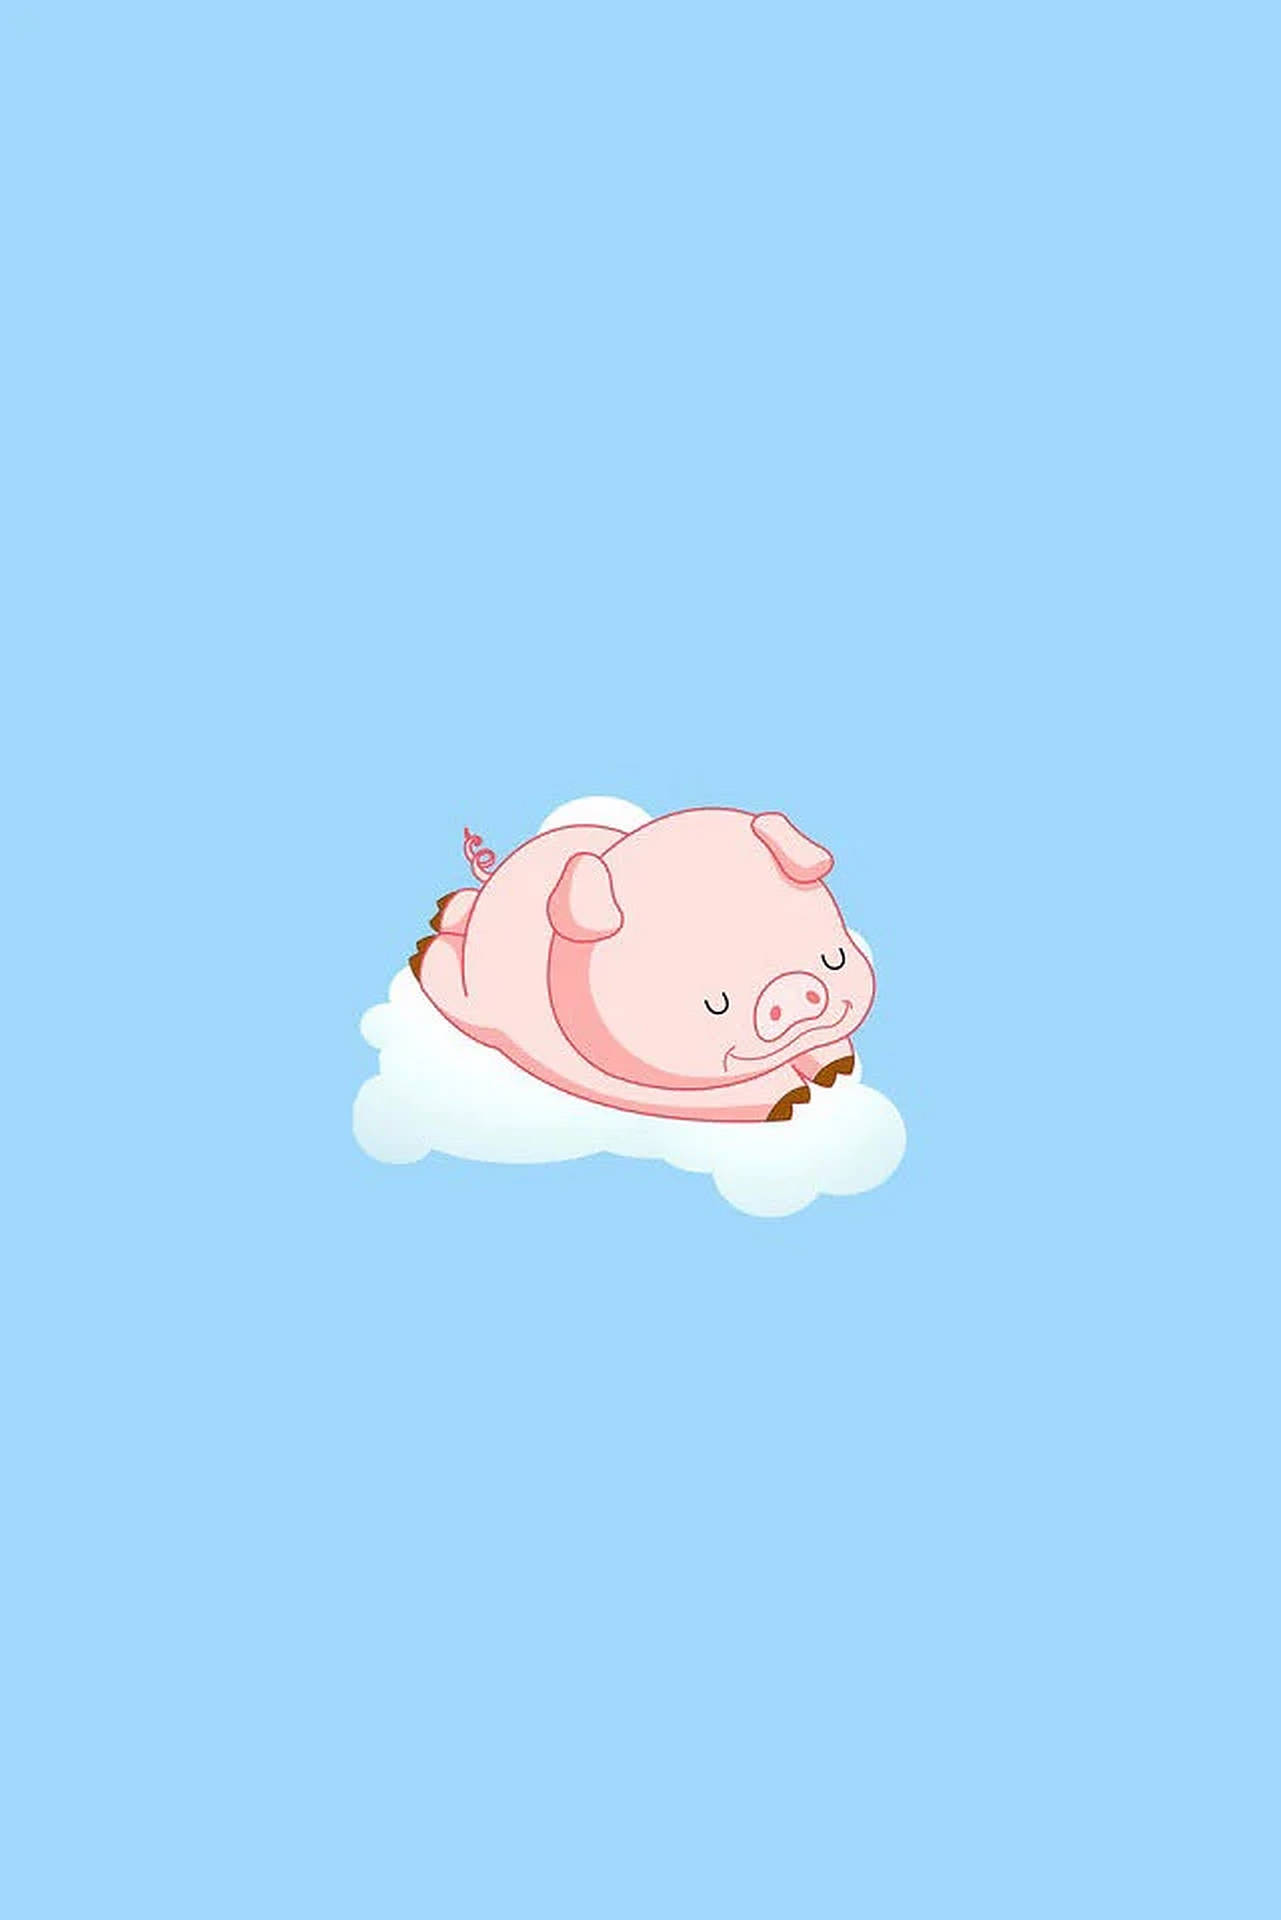 Cute Pig On Cloud